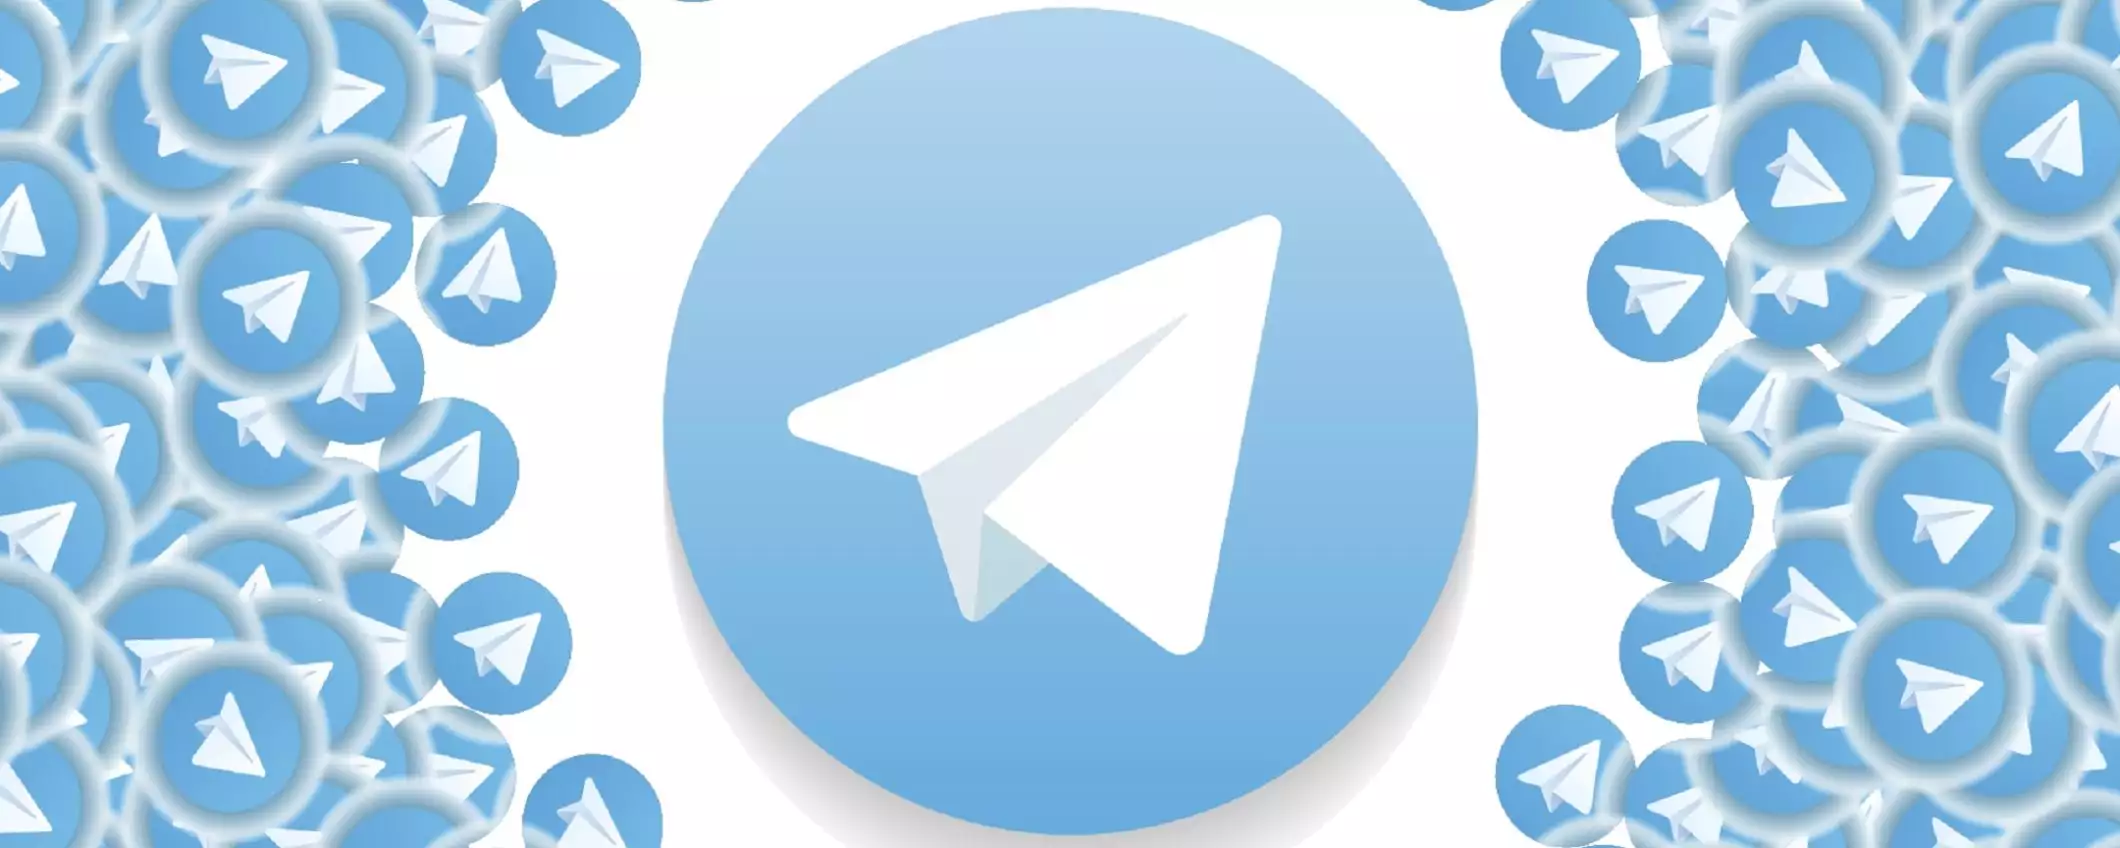 Come creare e gestire gruppi su Telegram: guida completa per utenti Android, iOS e PC